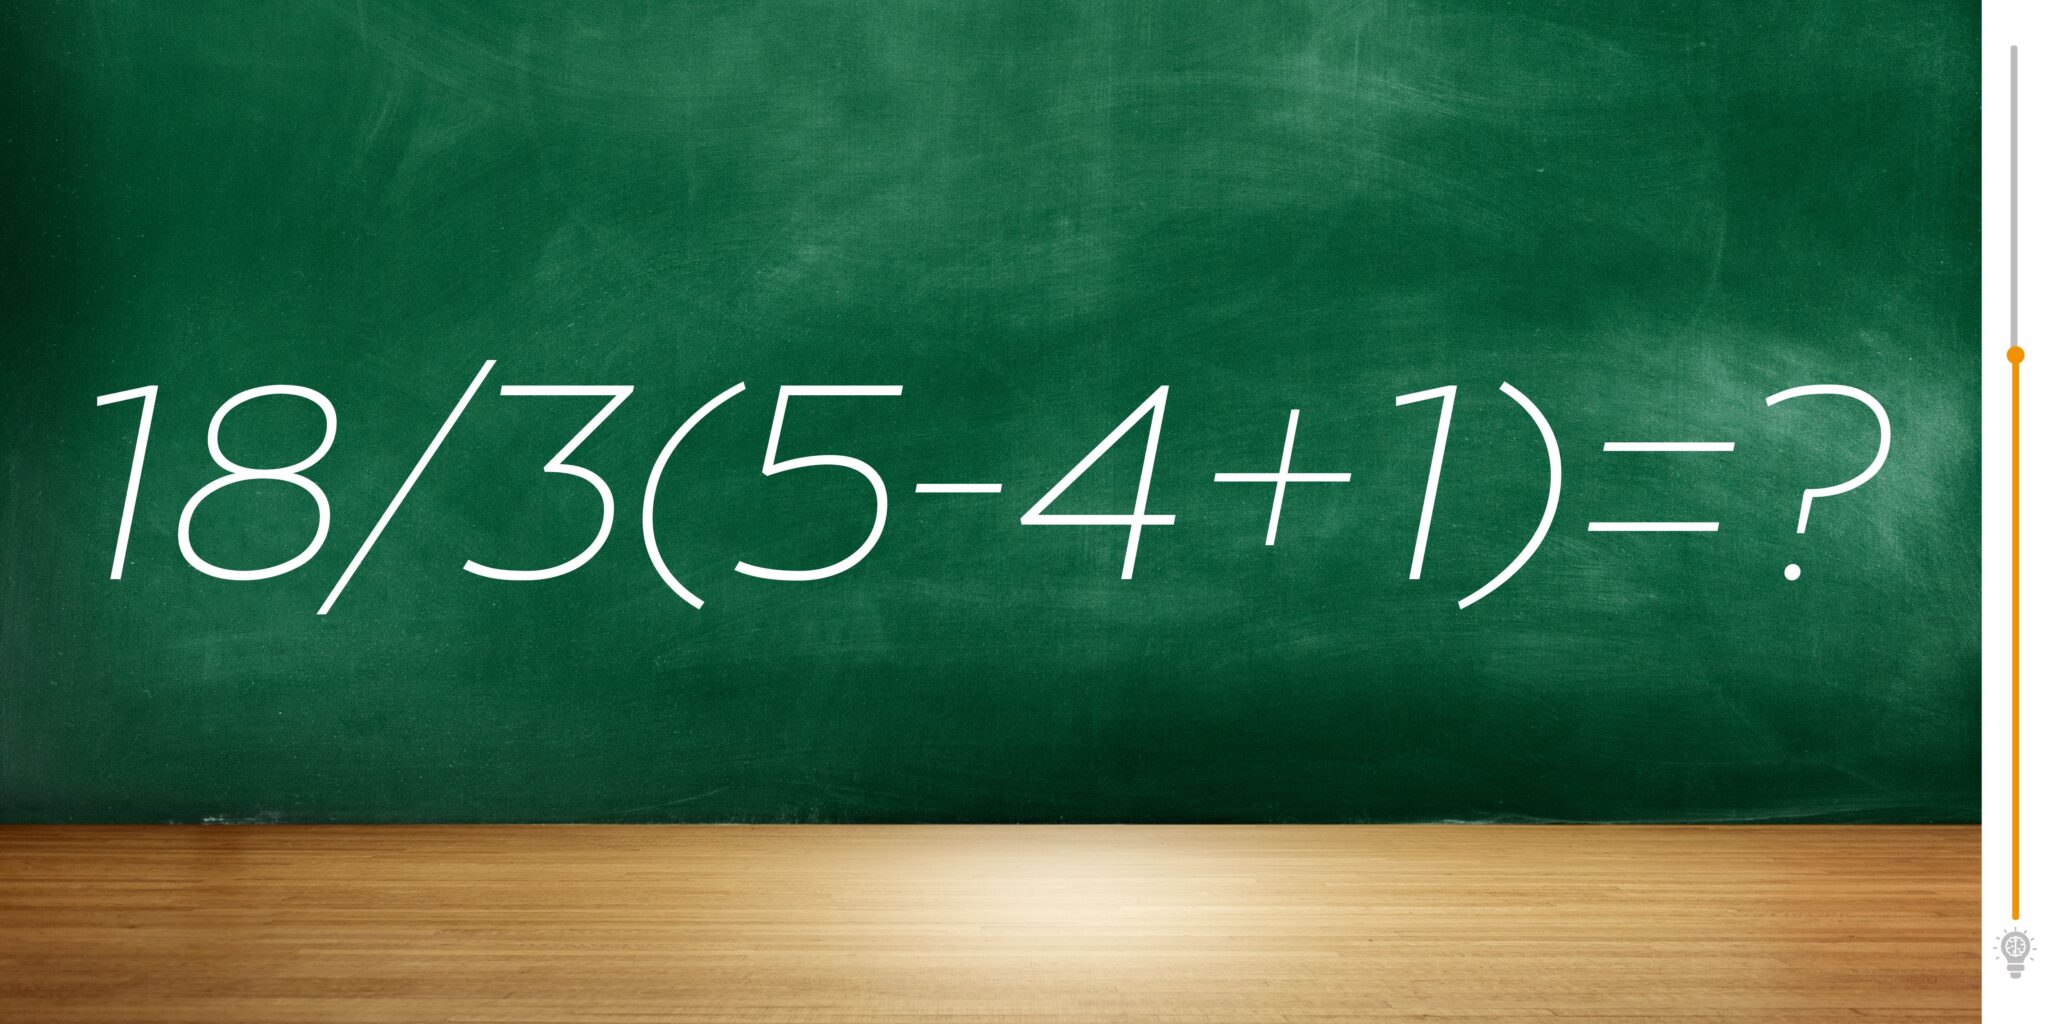 Desvende este enigma matemático em menos de 25 segundos e teste seu QI